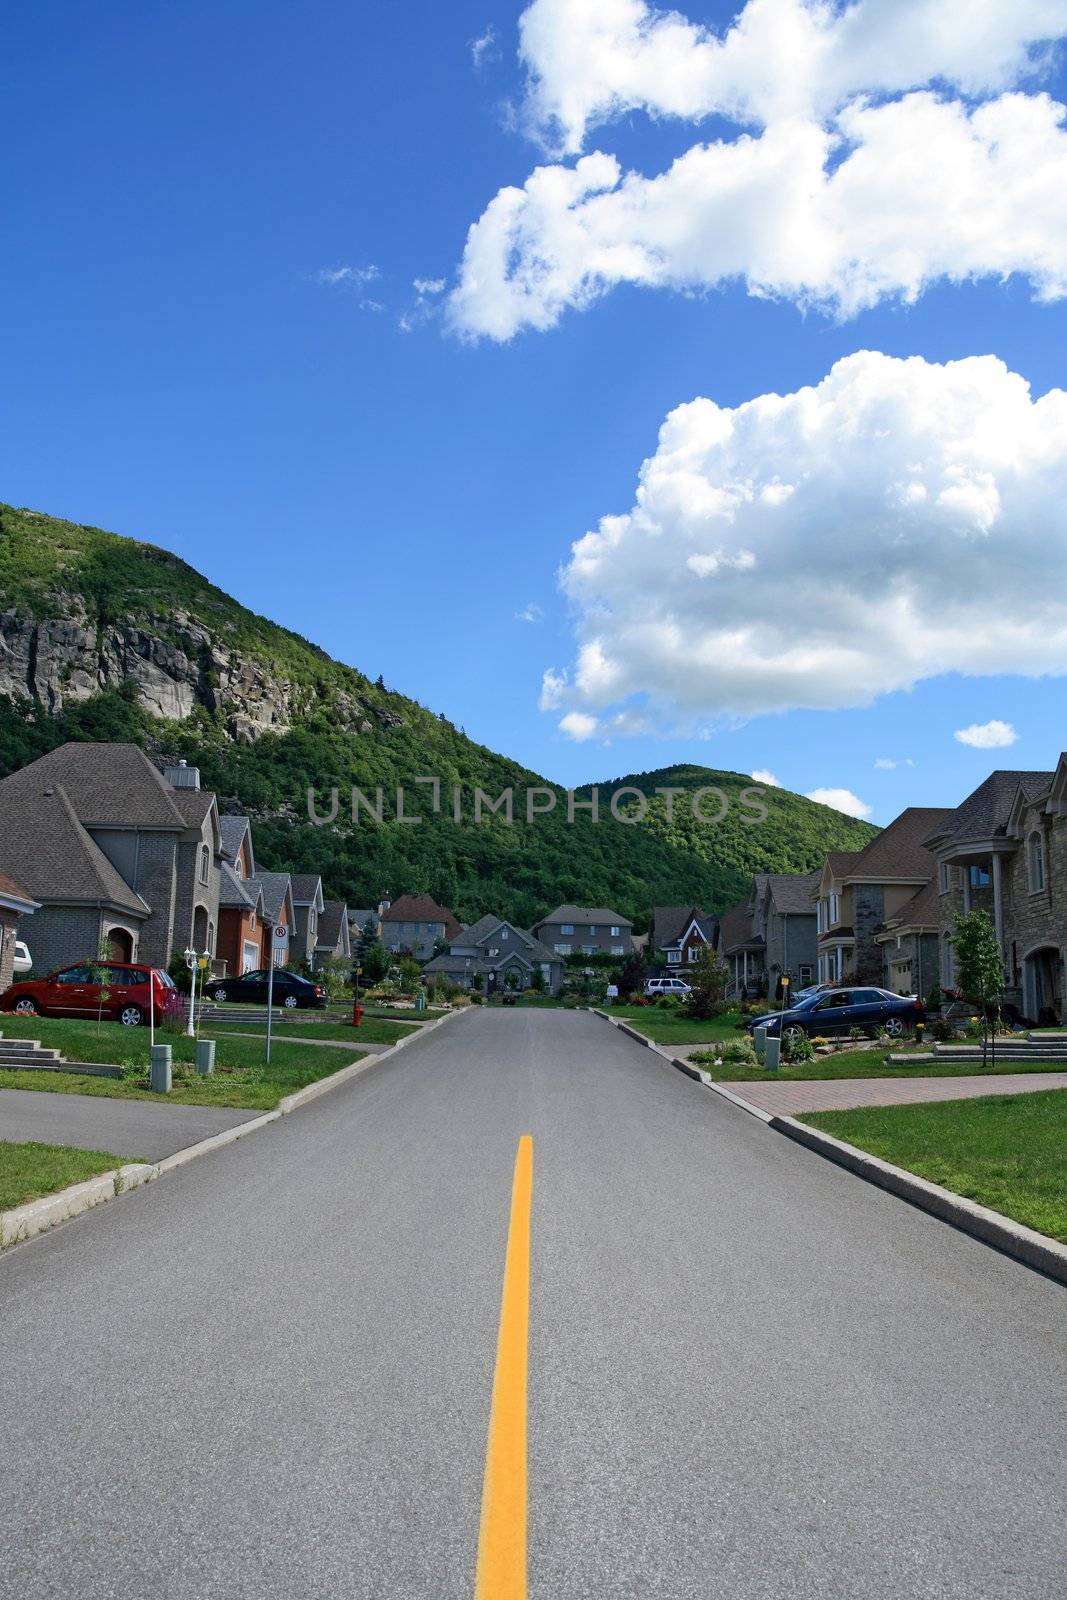 Prestigious suburban neighborhood in mountain area by anikasalsera